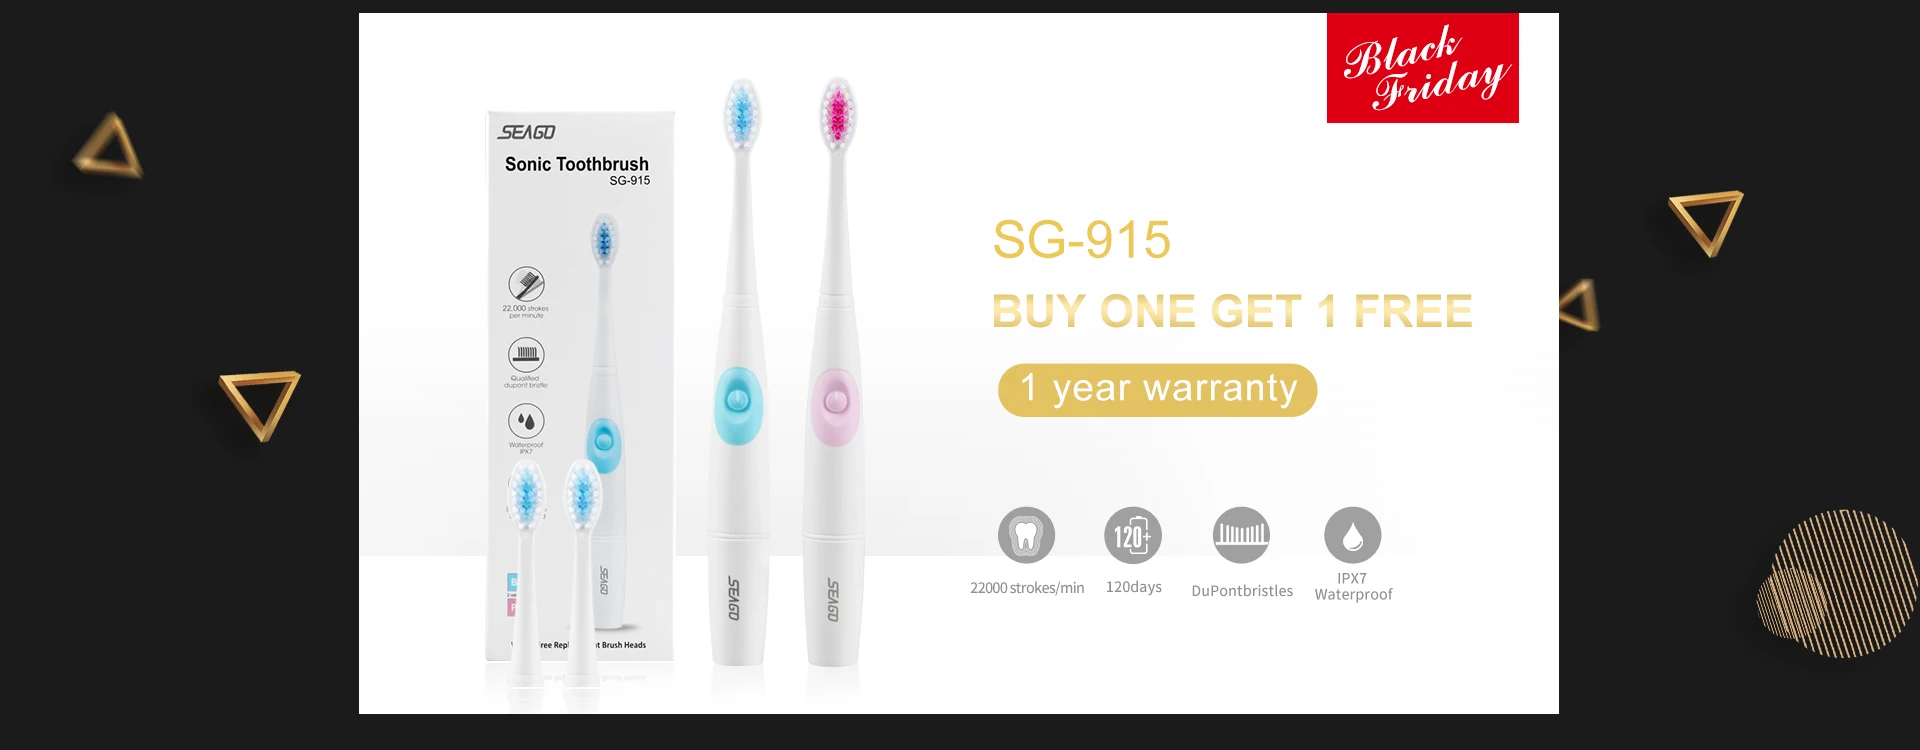 Электрическая зубная щетка SEAGO с 1 сменной щеткой купить 1 получить 1 бесплатно аккумулятор зубная щетка для гигиены полости рта E23